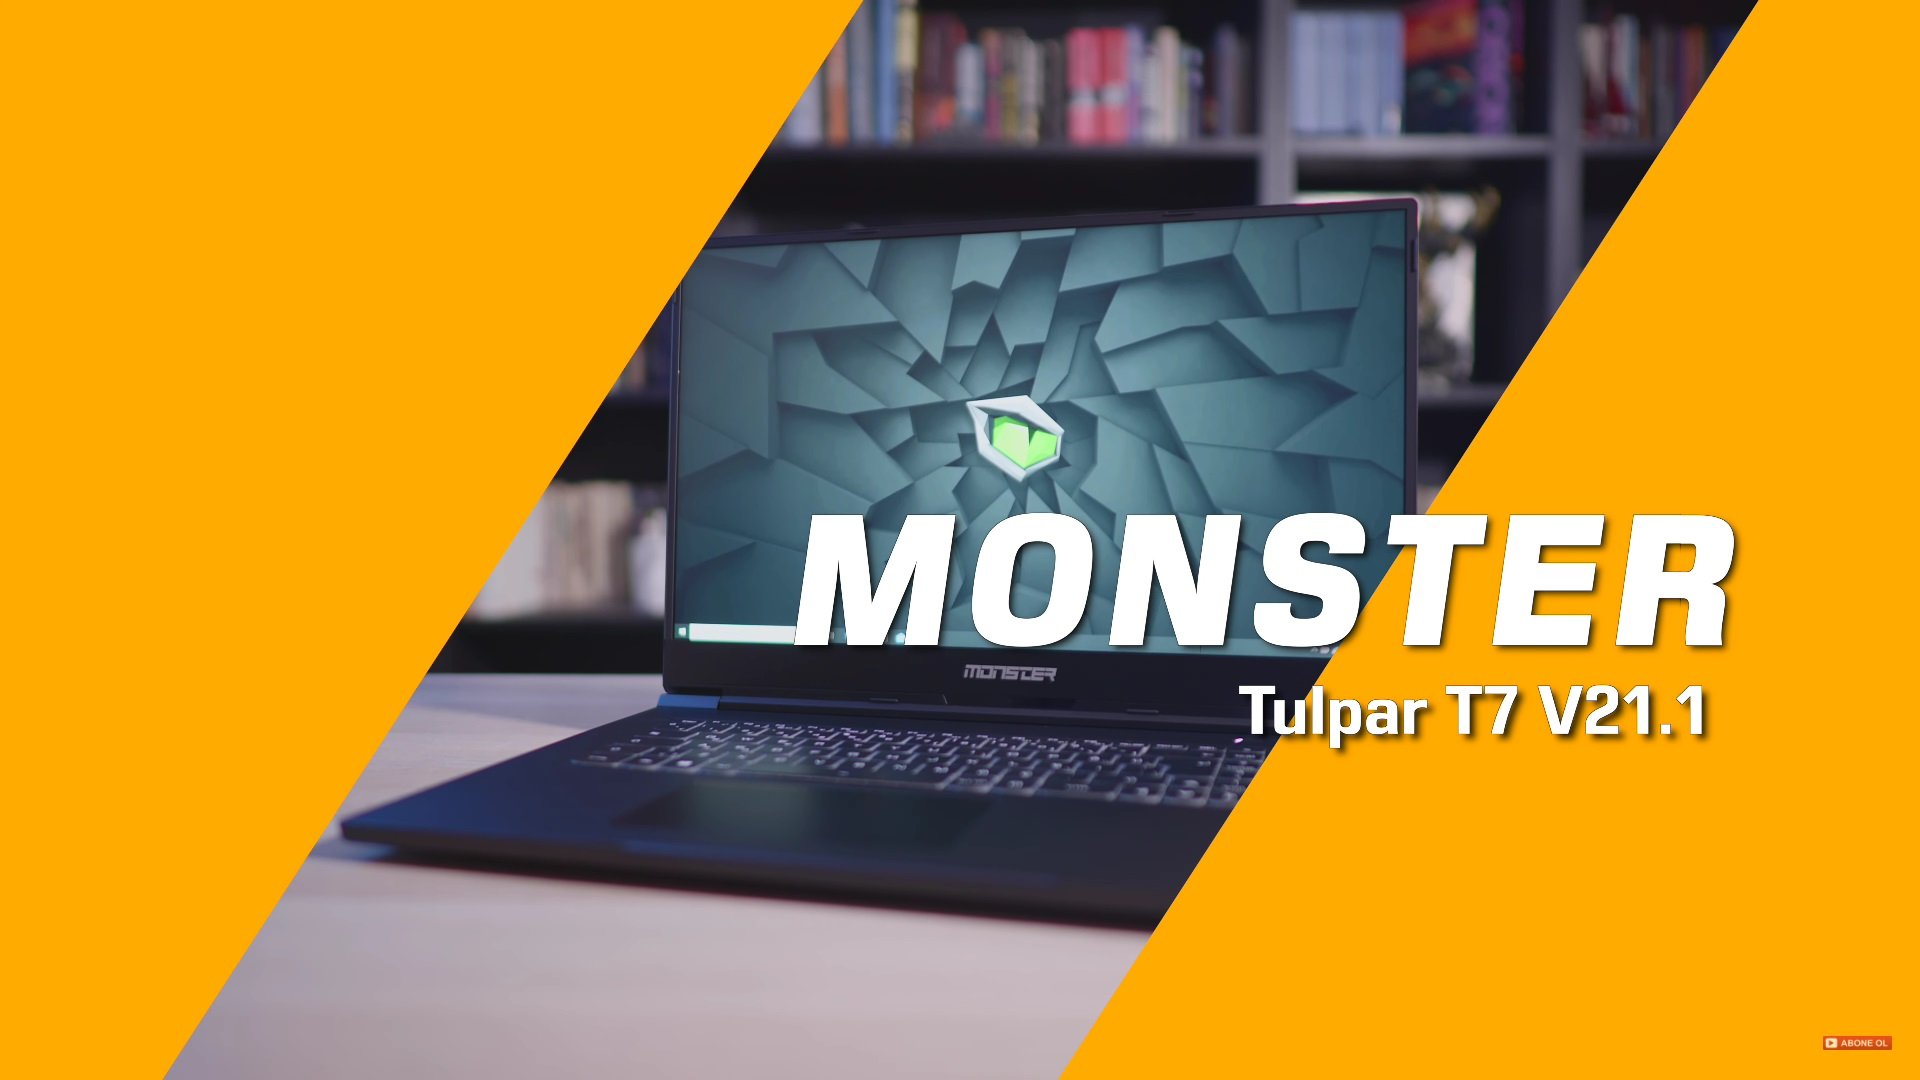 Monster-Tulpar-T7-V21.1-İnceleme-01.jpg